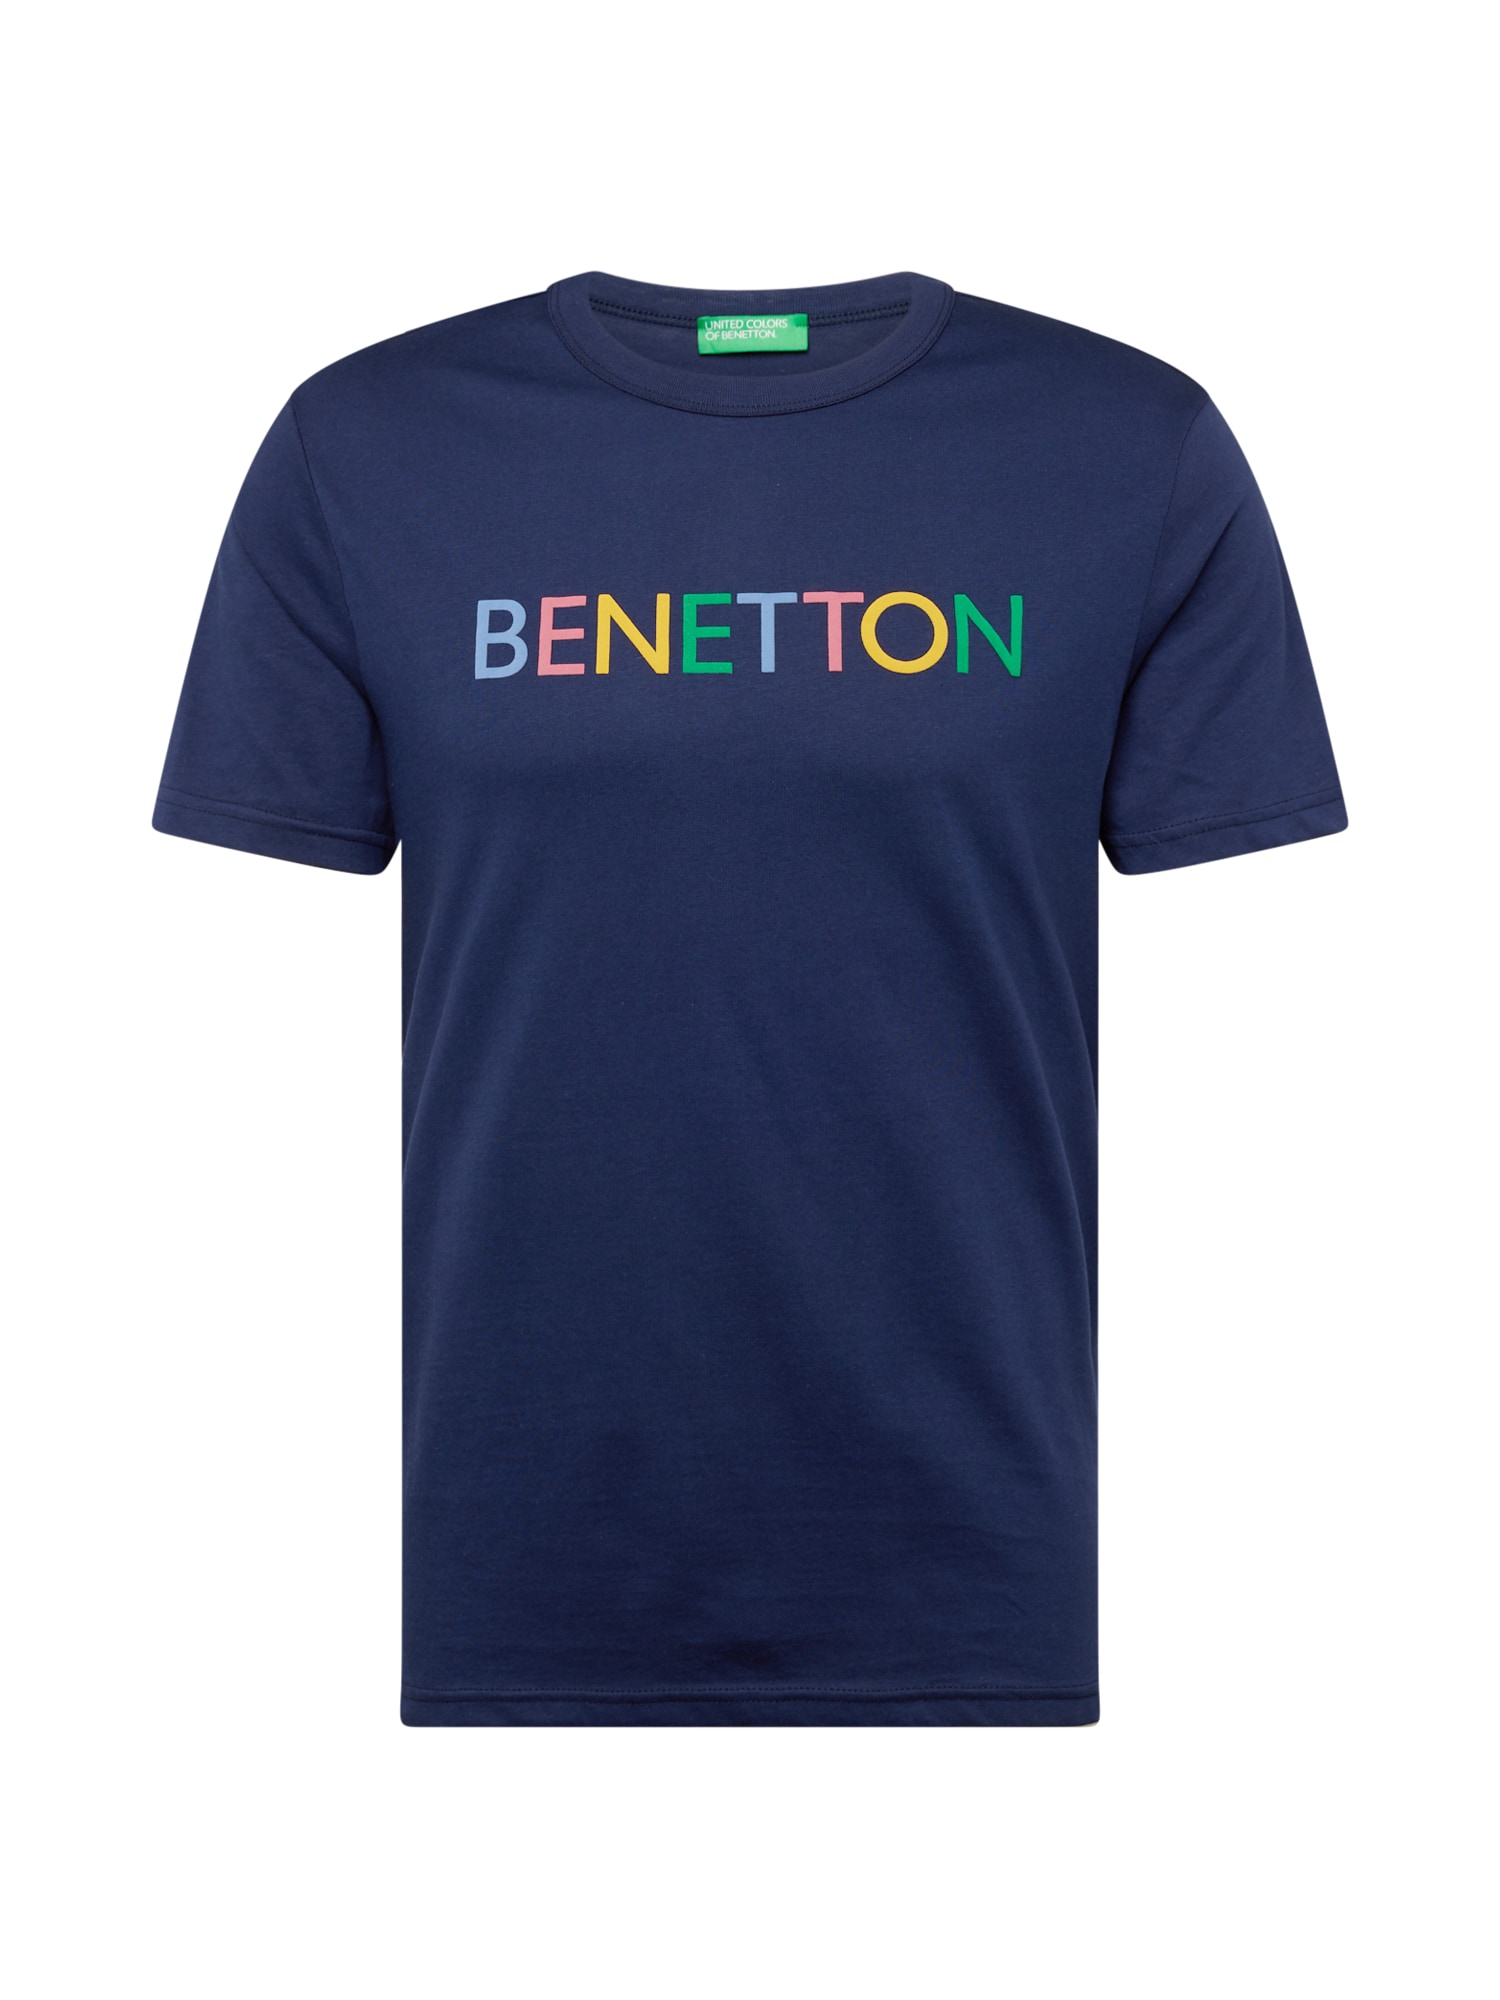 UNITED COLORS OF BENETTON Marškinėliai tamsiai mėlyna / mišrios spalvos